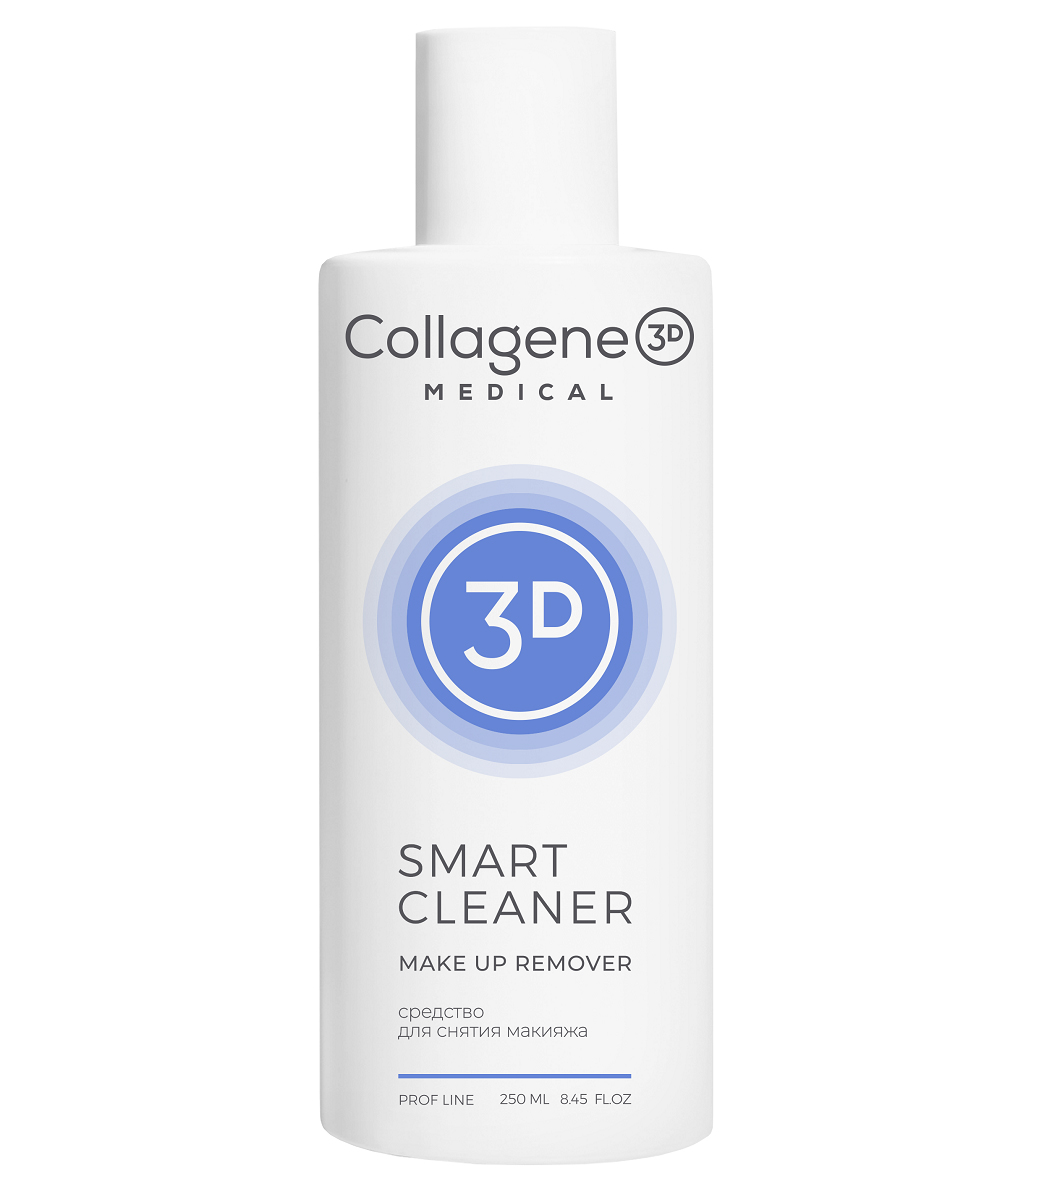 Медикал Коллаген 3Д Средство для снятия макияжа Make Up Remover, 250 мл (Medical Collagene 3D, Smart Cleaner) фото 0